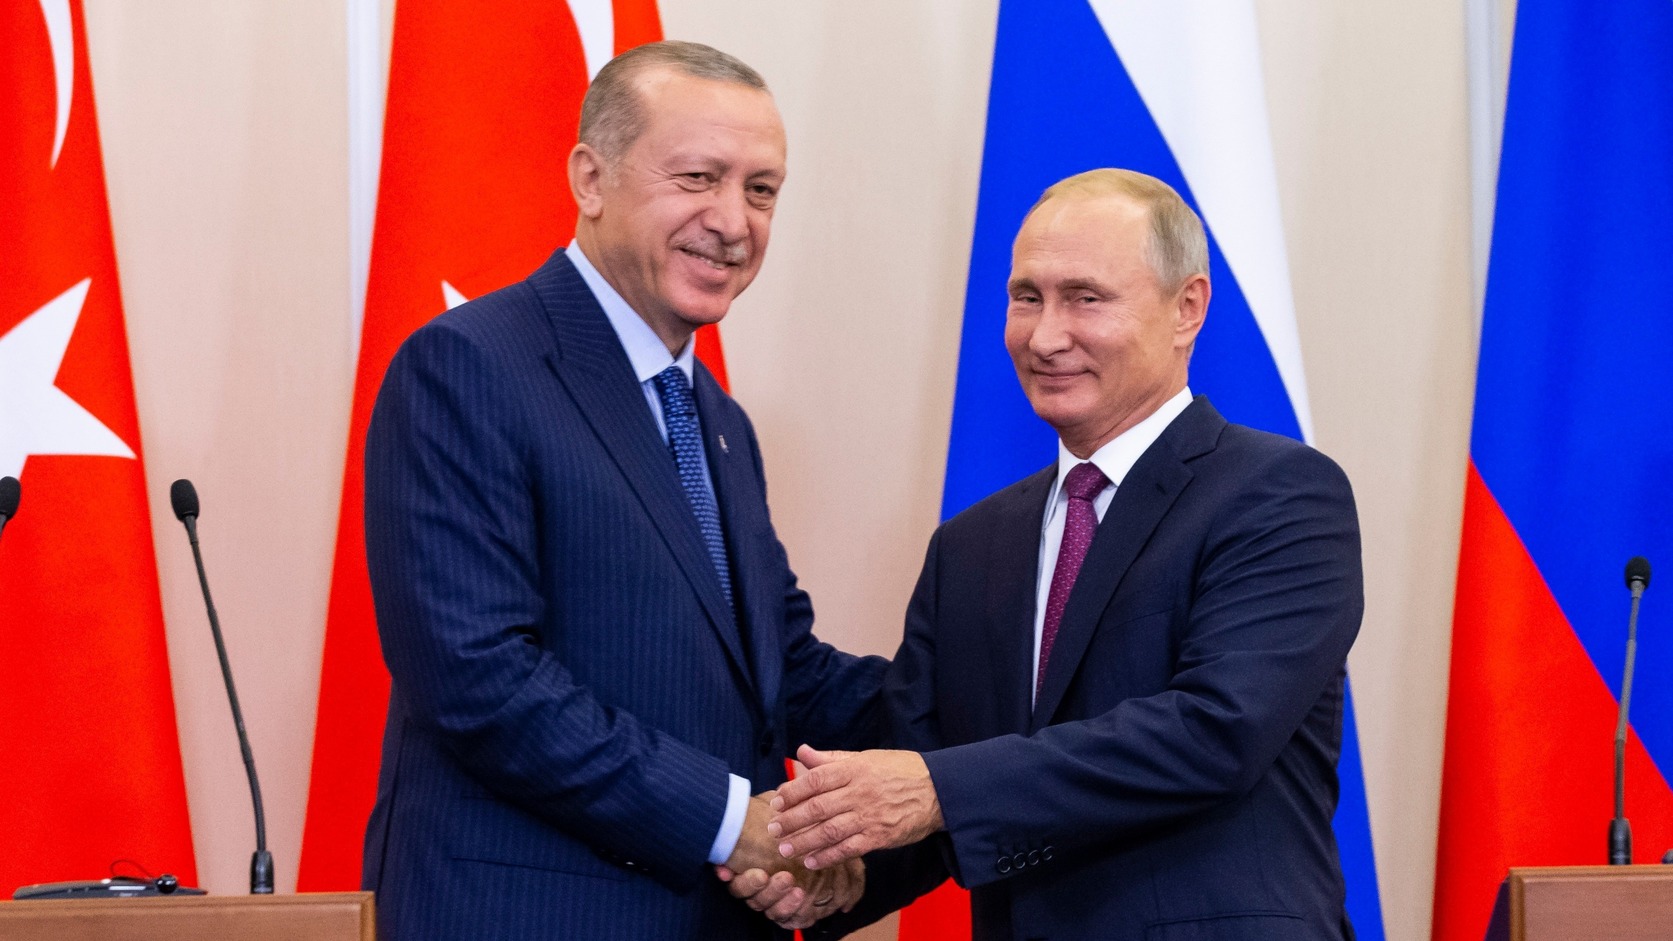 Putyin: a legfelsőbb szinten van szükség közvetlen orosz-török párbeszédre az idlíbi helyzet miatt